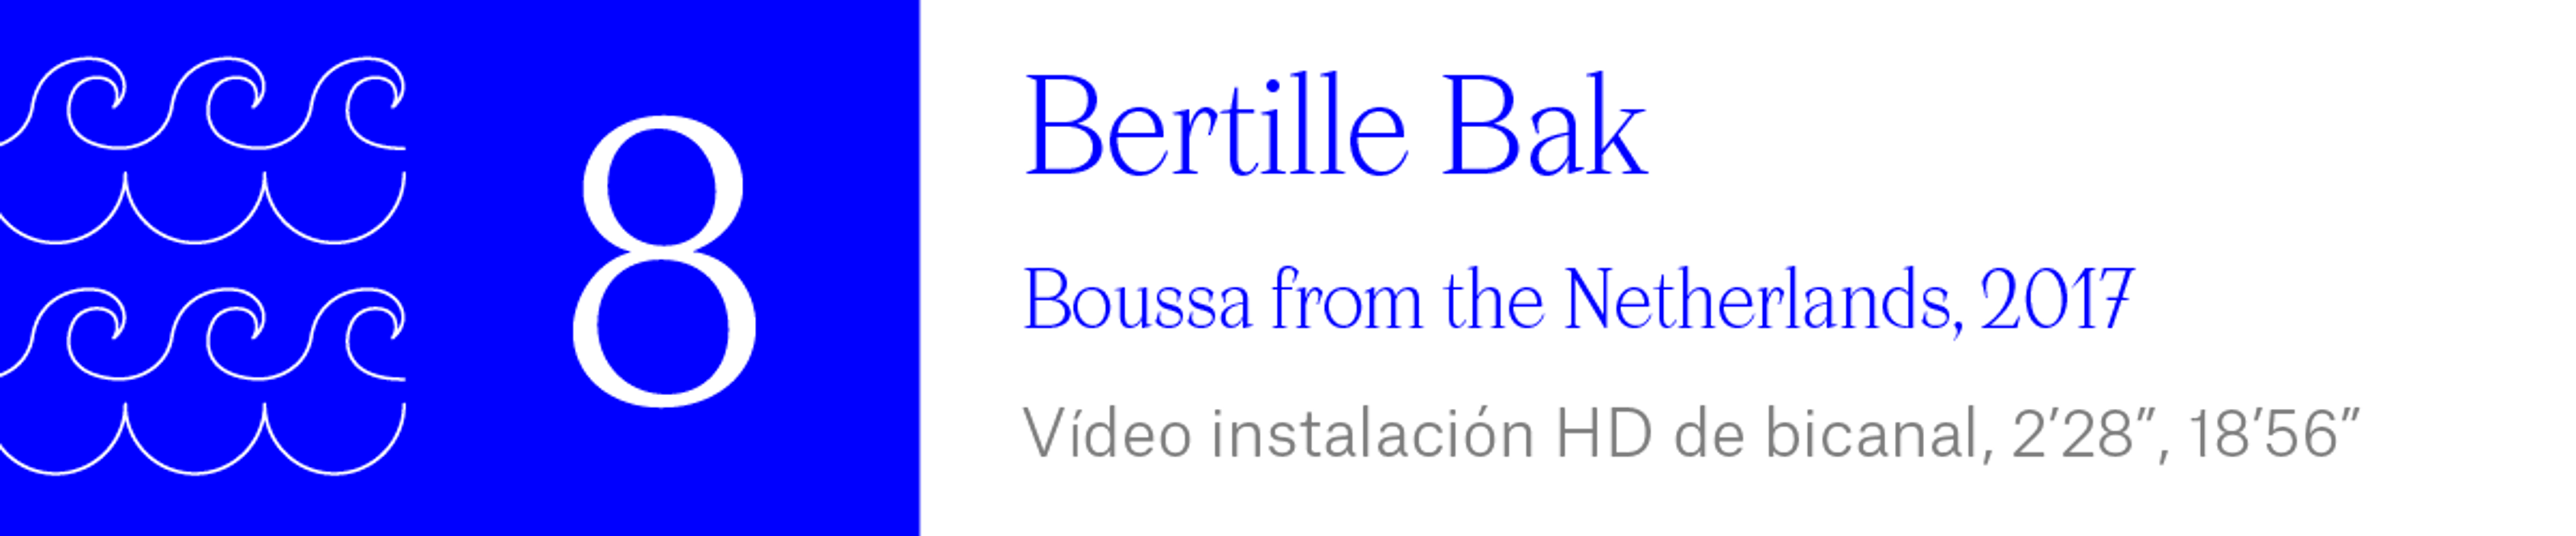 The Wave (8) Bertille Bak - Boussa from the Netherlands, 2017. Vídeo instalación HD de bicanal, 2’28”, 18’56”